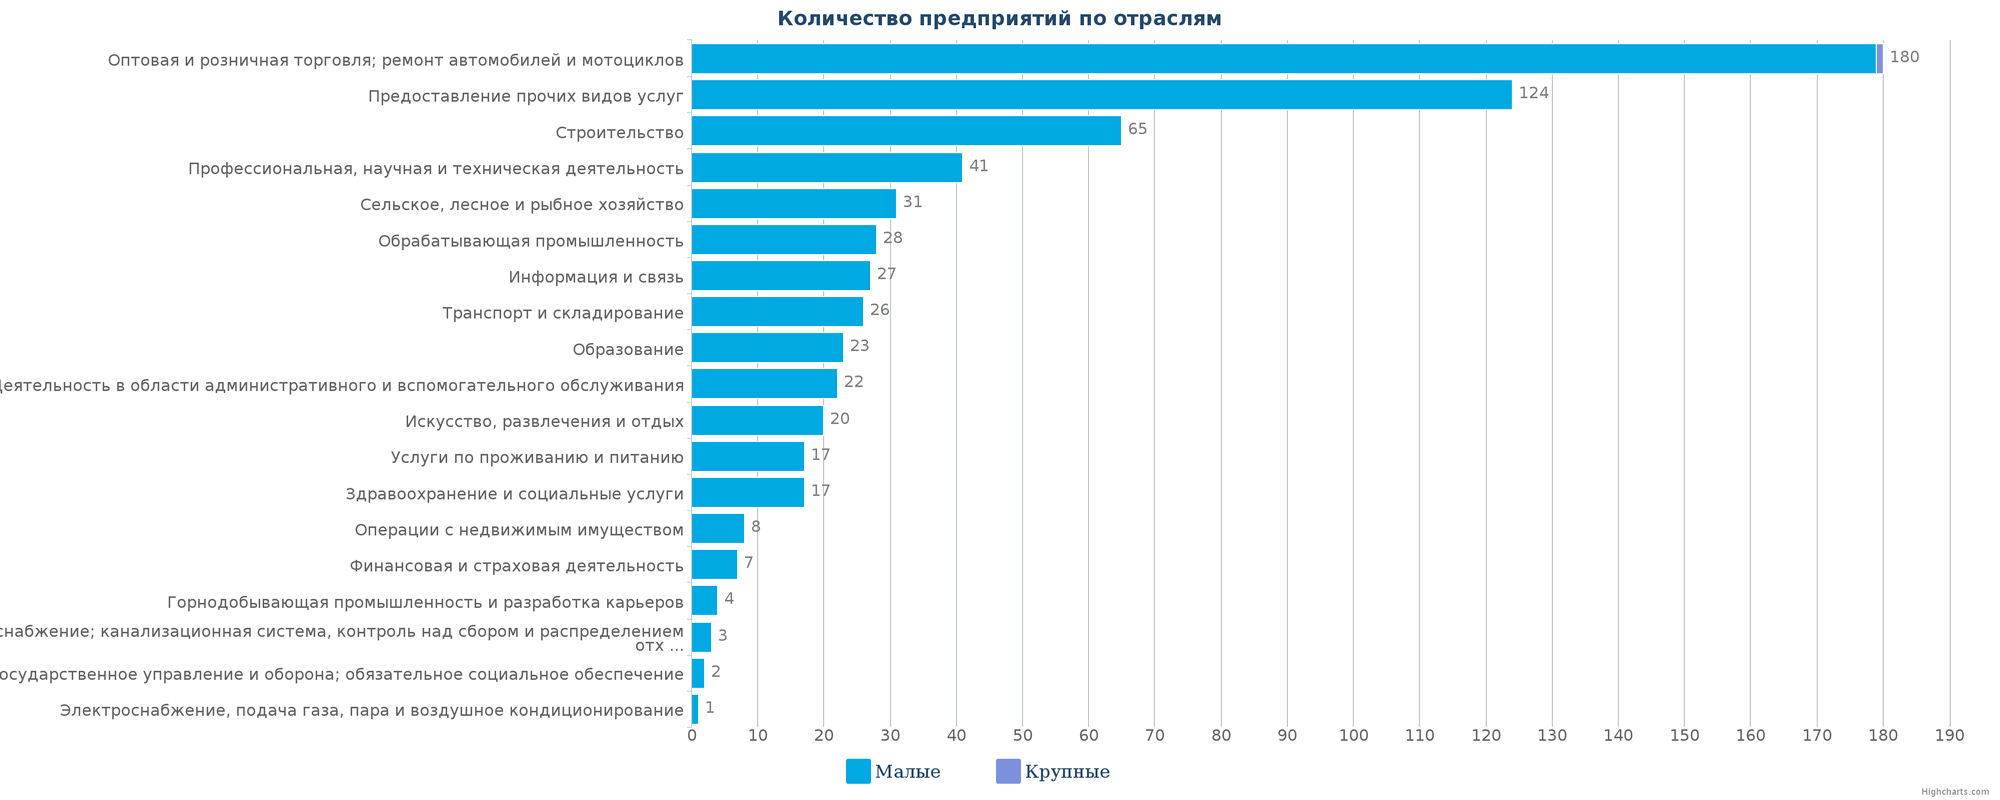 Новые организации в каталоге Казахстана